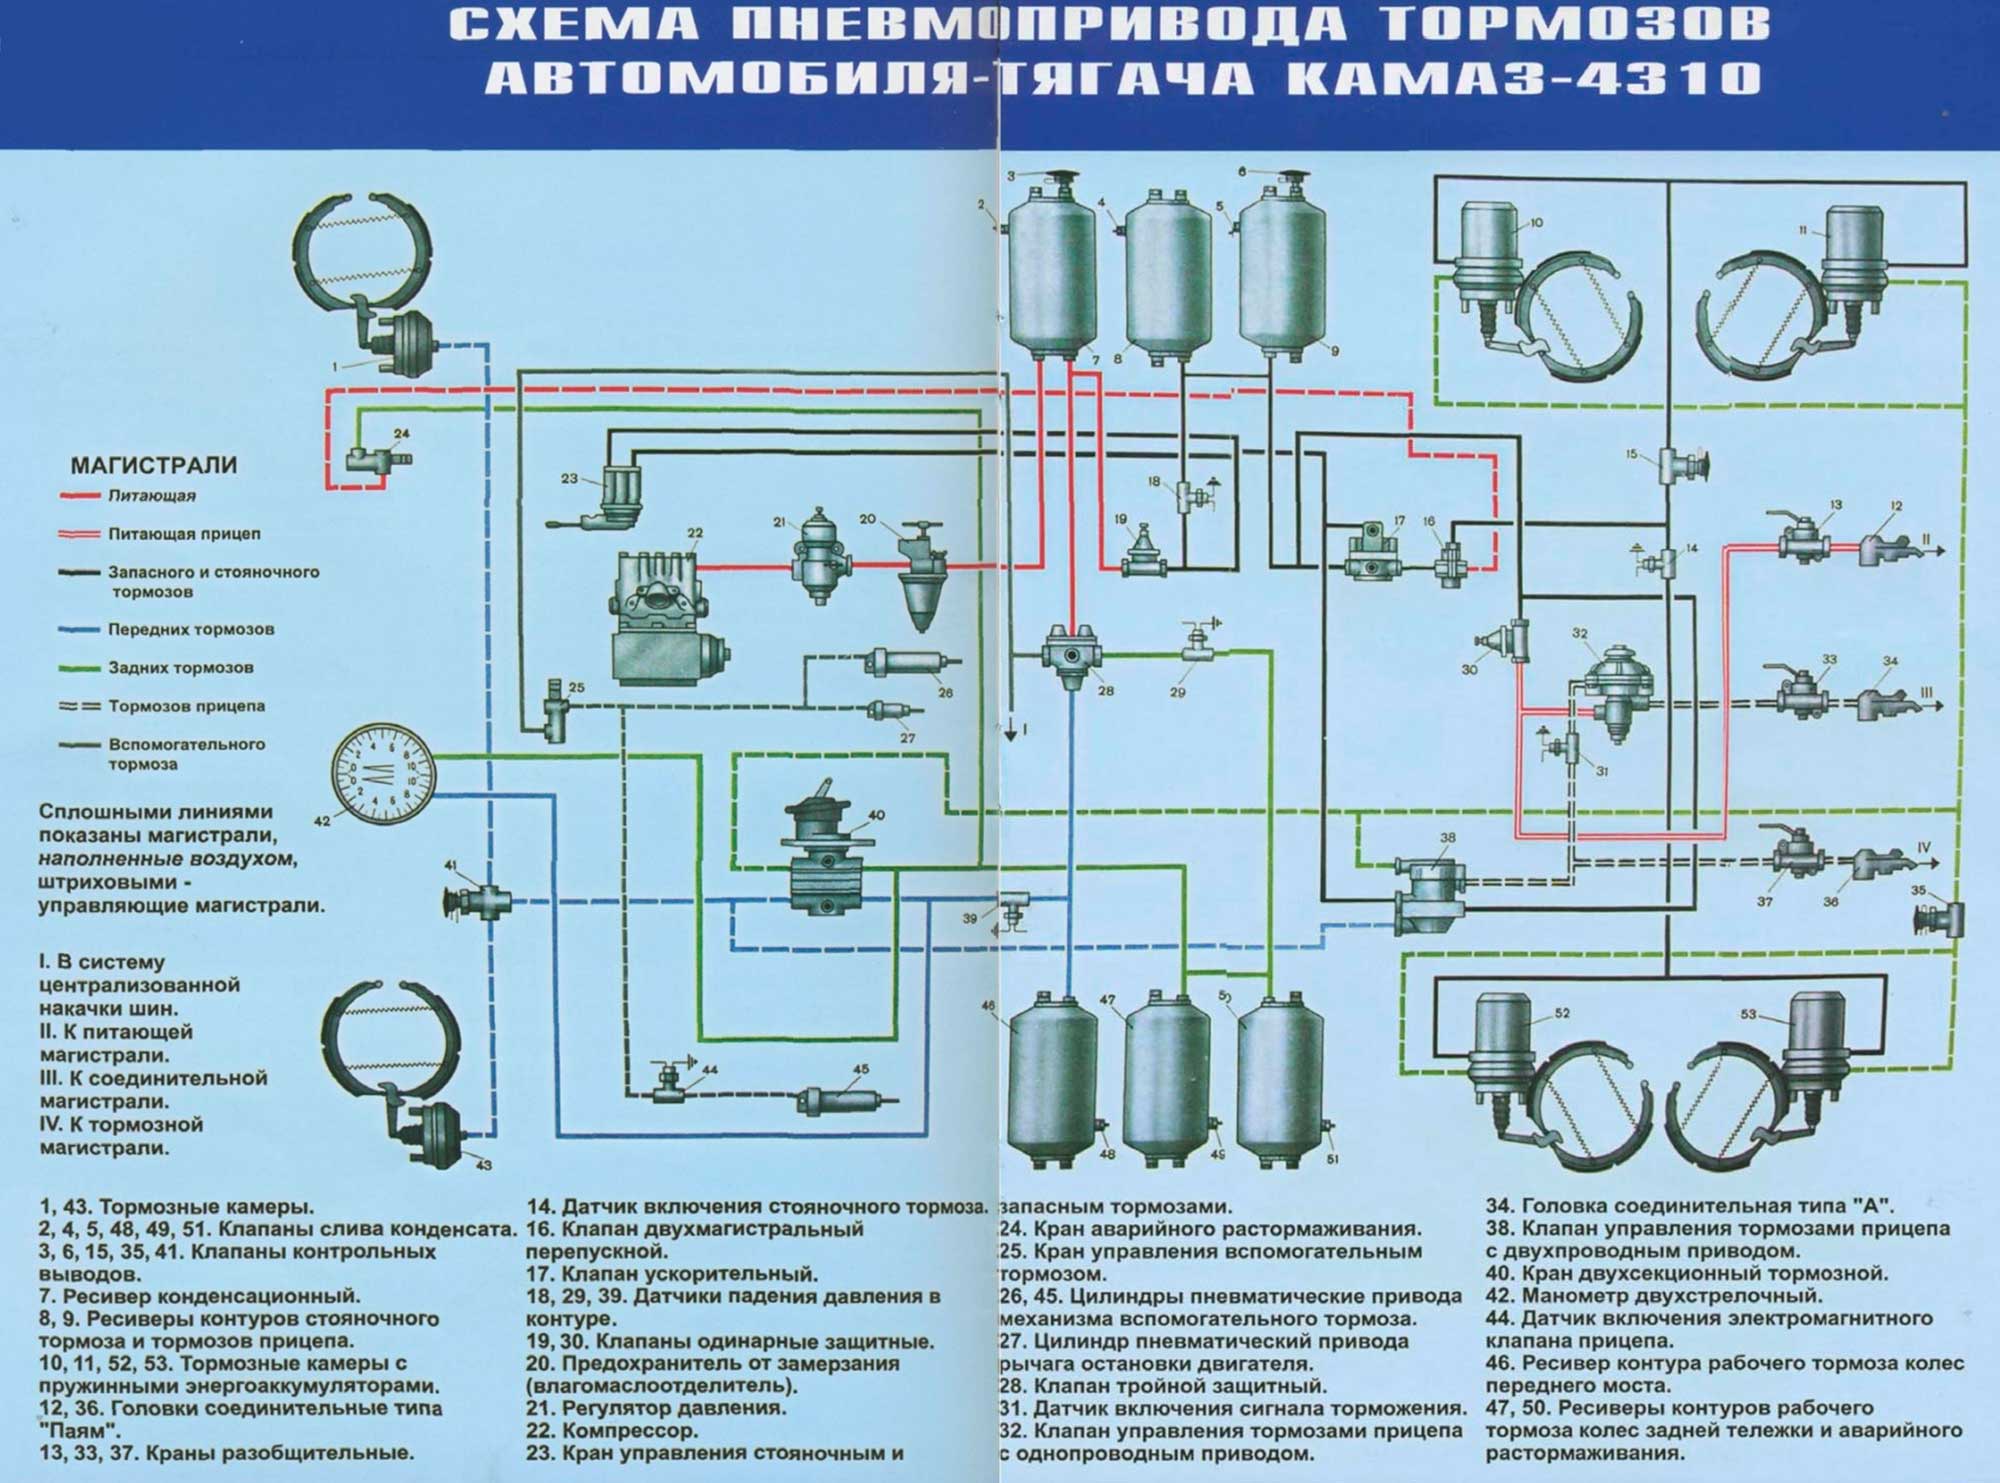 Камаз 5320 | 54115 - характеристики тормозной системы